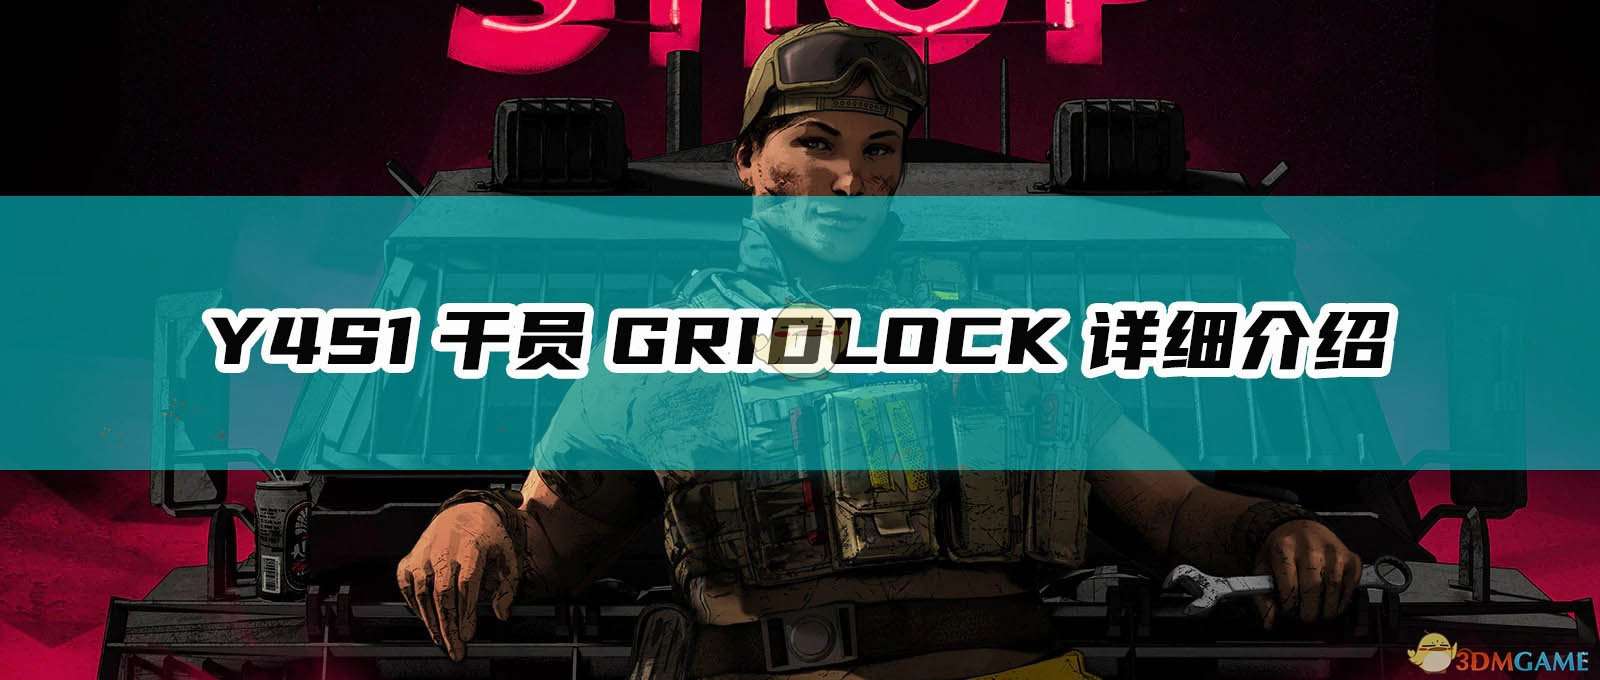 《彩虹六号：围攻》Y4S1干员GRIDLOCK详细介绍